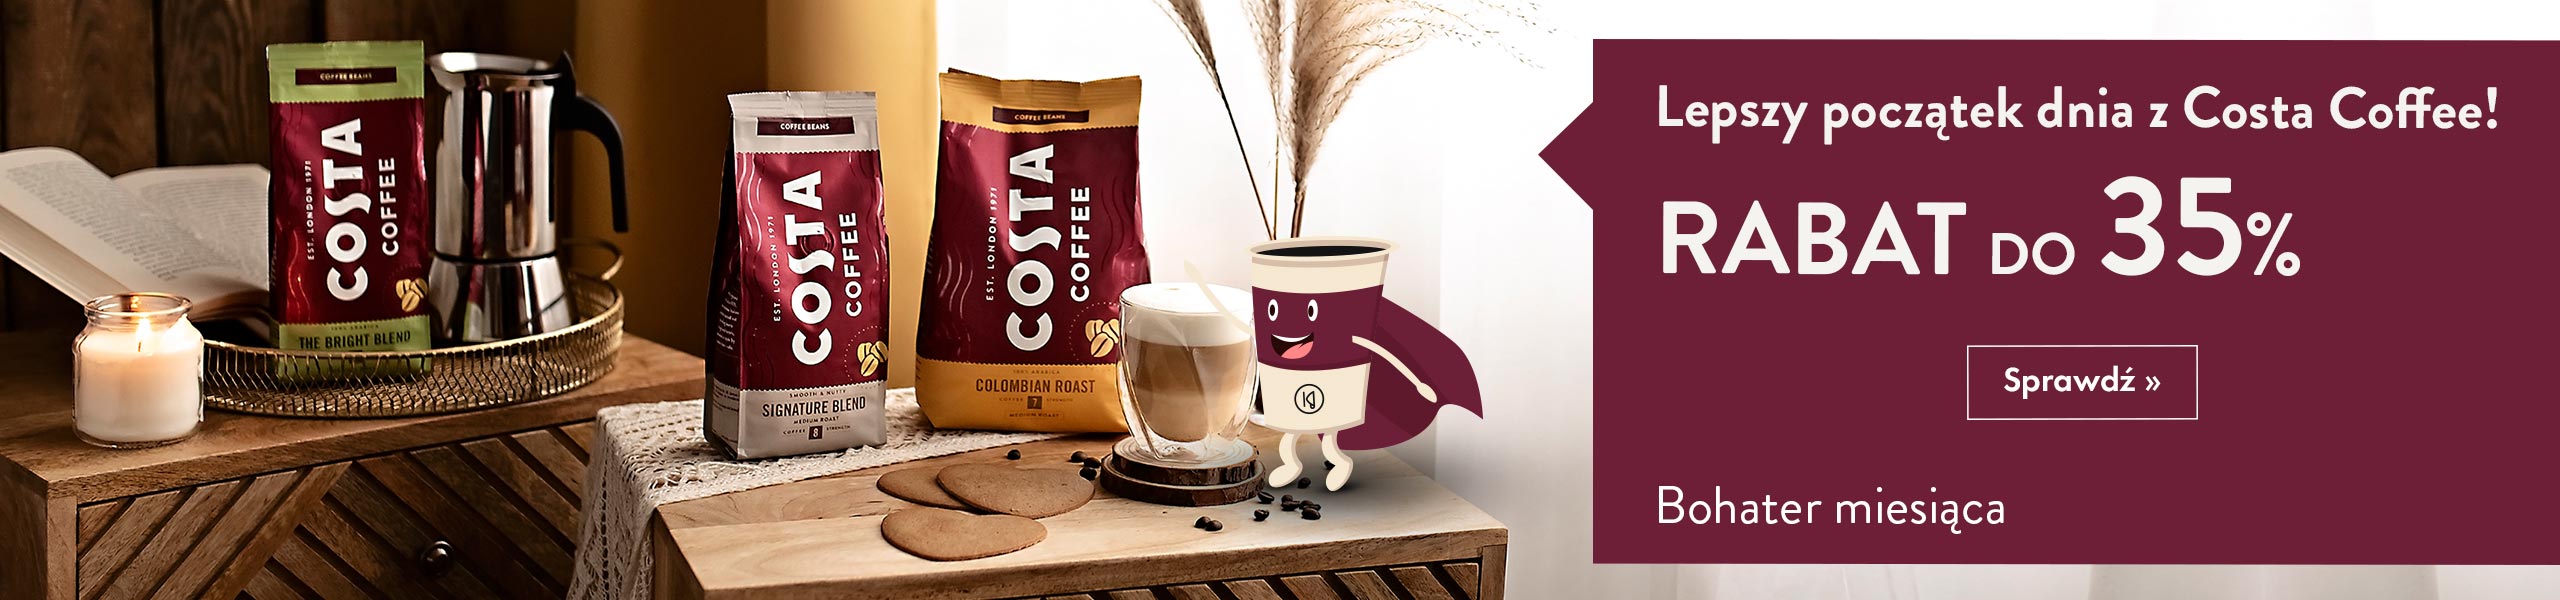 Kup 1 kg kawy Costa Coffee a otrzymasz gratis